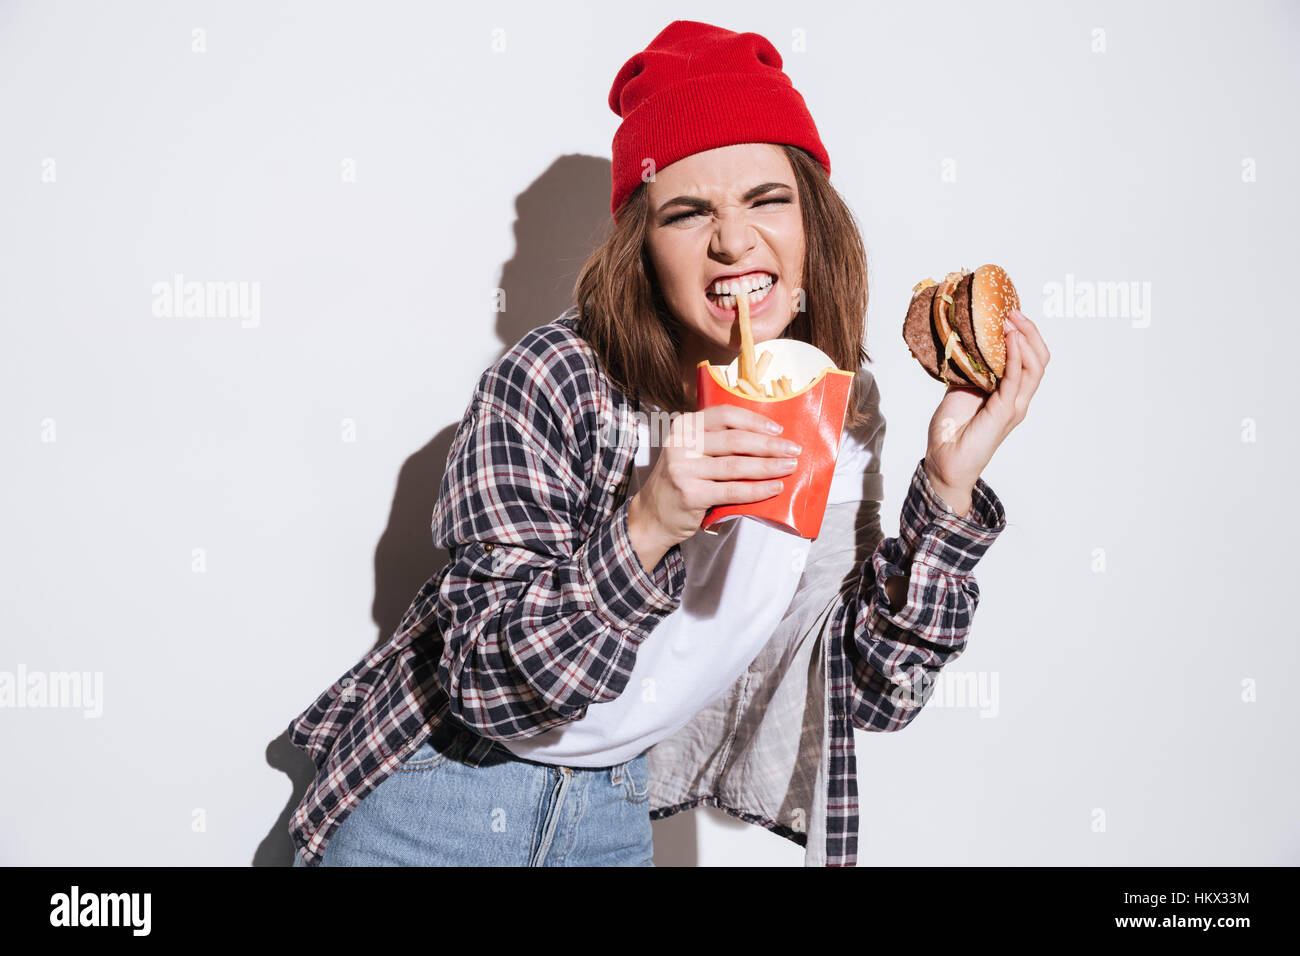 Bild von hungrigen böse Frau gekleidet im Hemd in einem Käfig Druck Hut überragt weißen Hintergrund isoliert und hält Pommes und burger Stockfoto